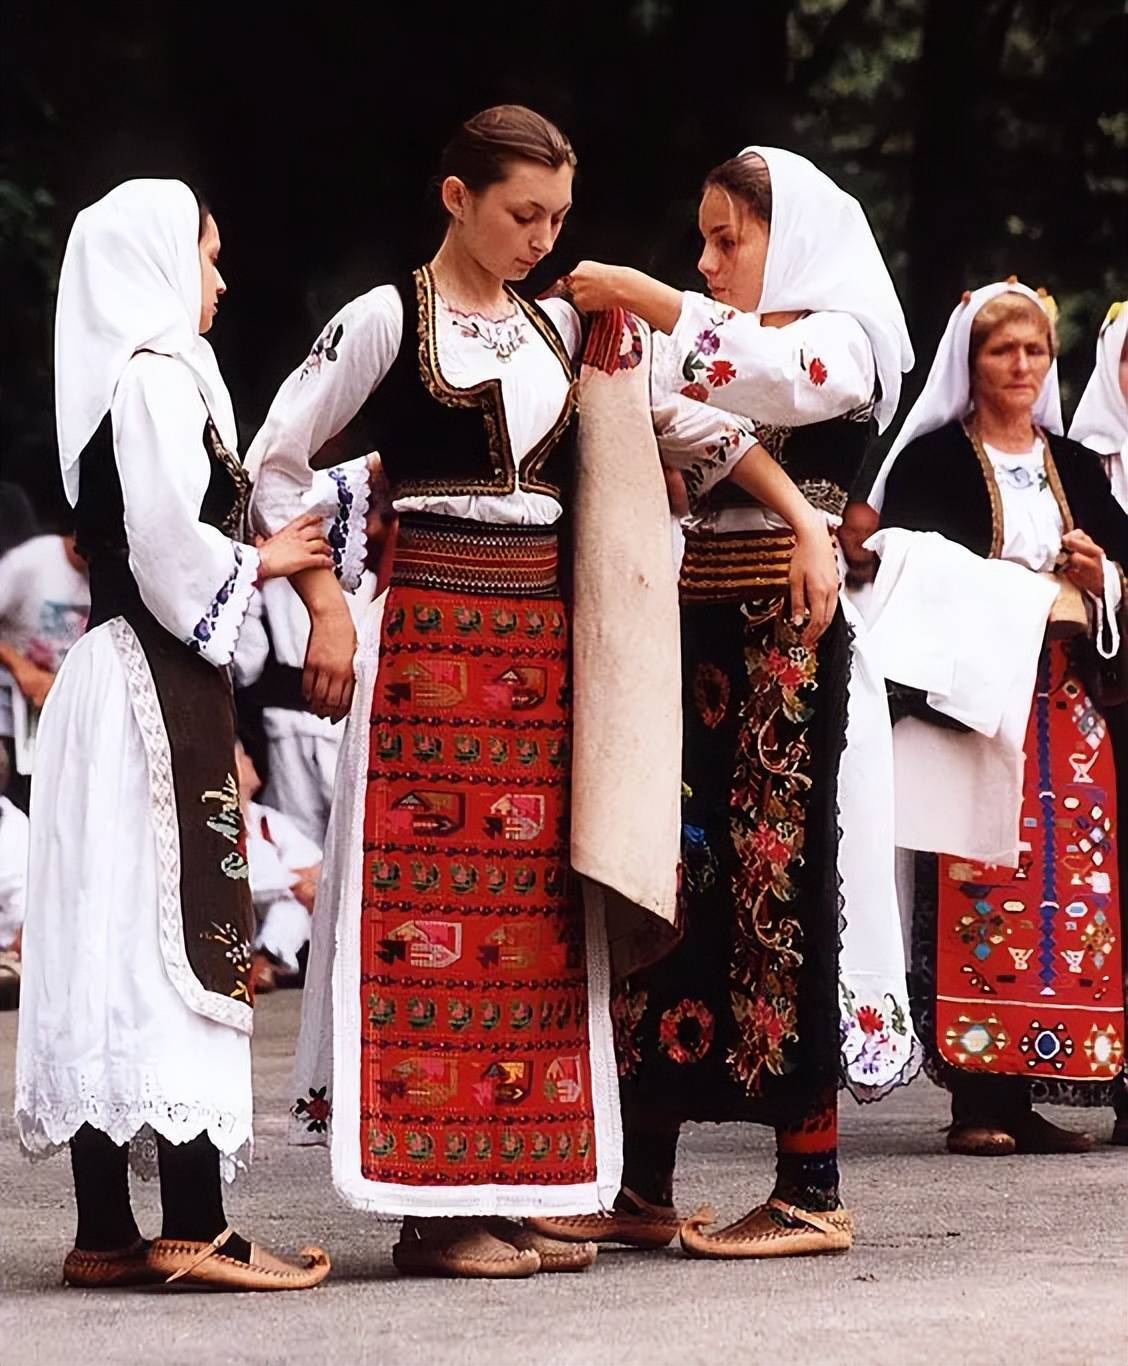 塞尔维亚传统服饰在那段岁月中,伊利亚人的后人,也就是阿尔巴尼亚人